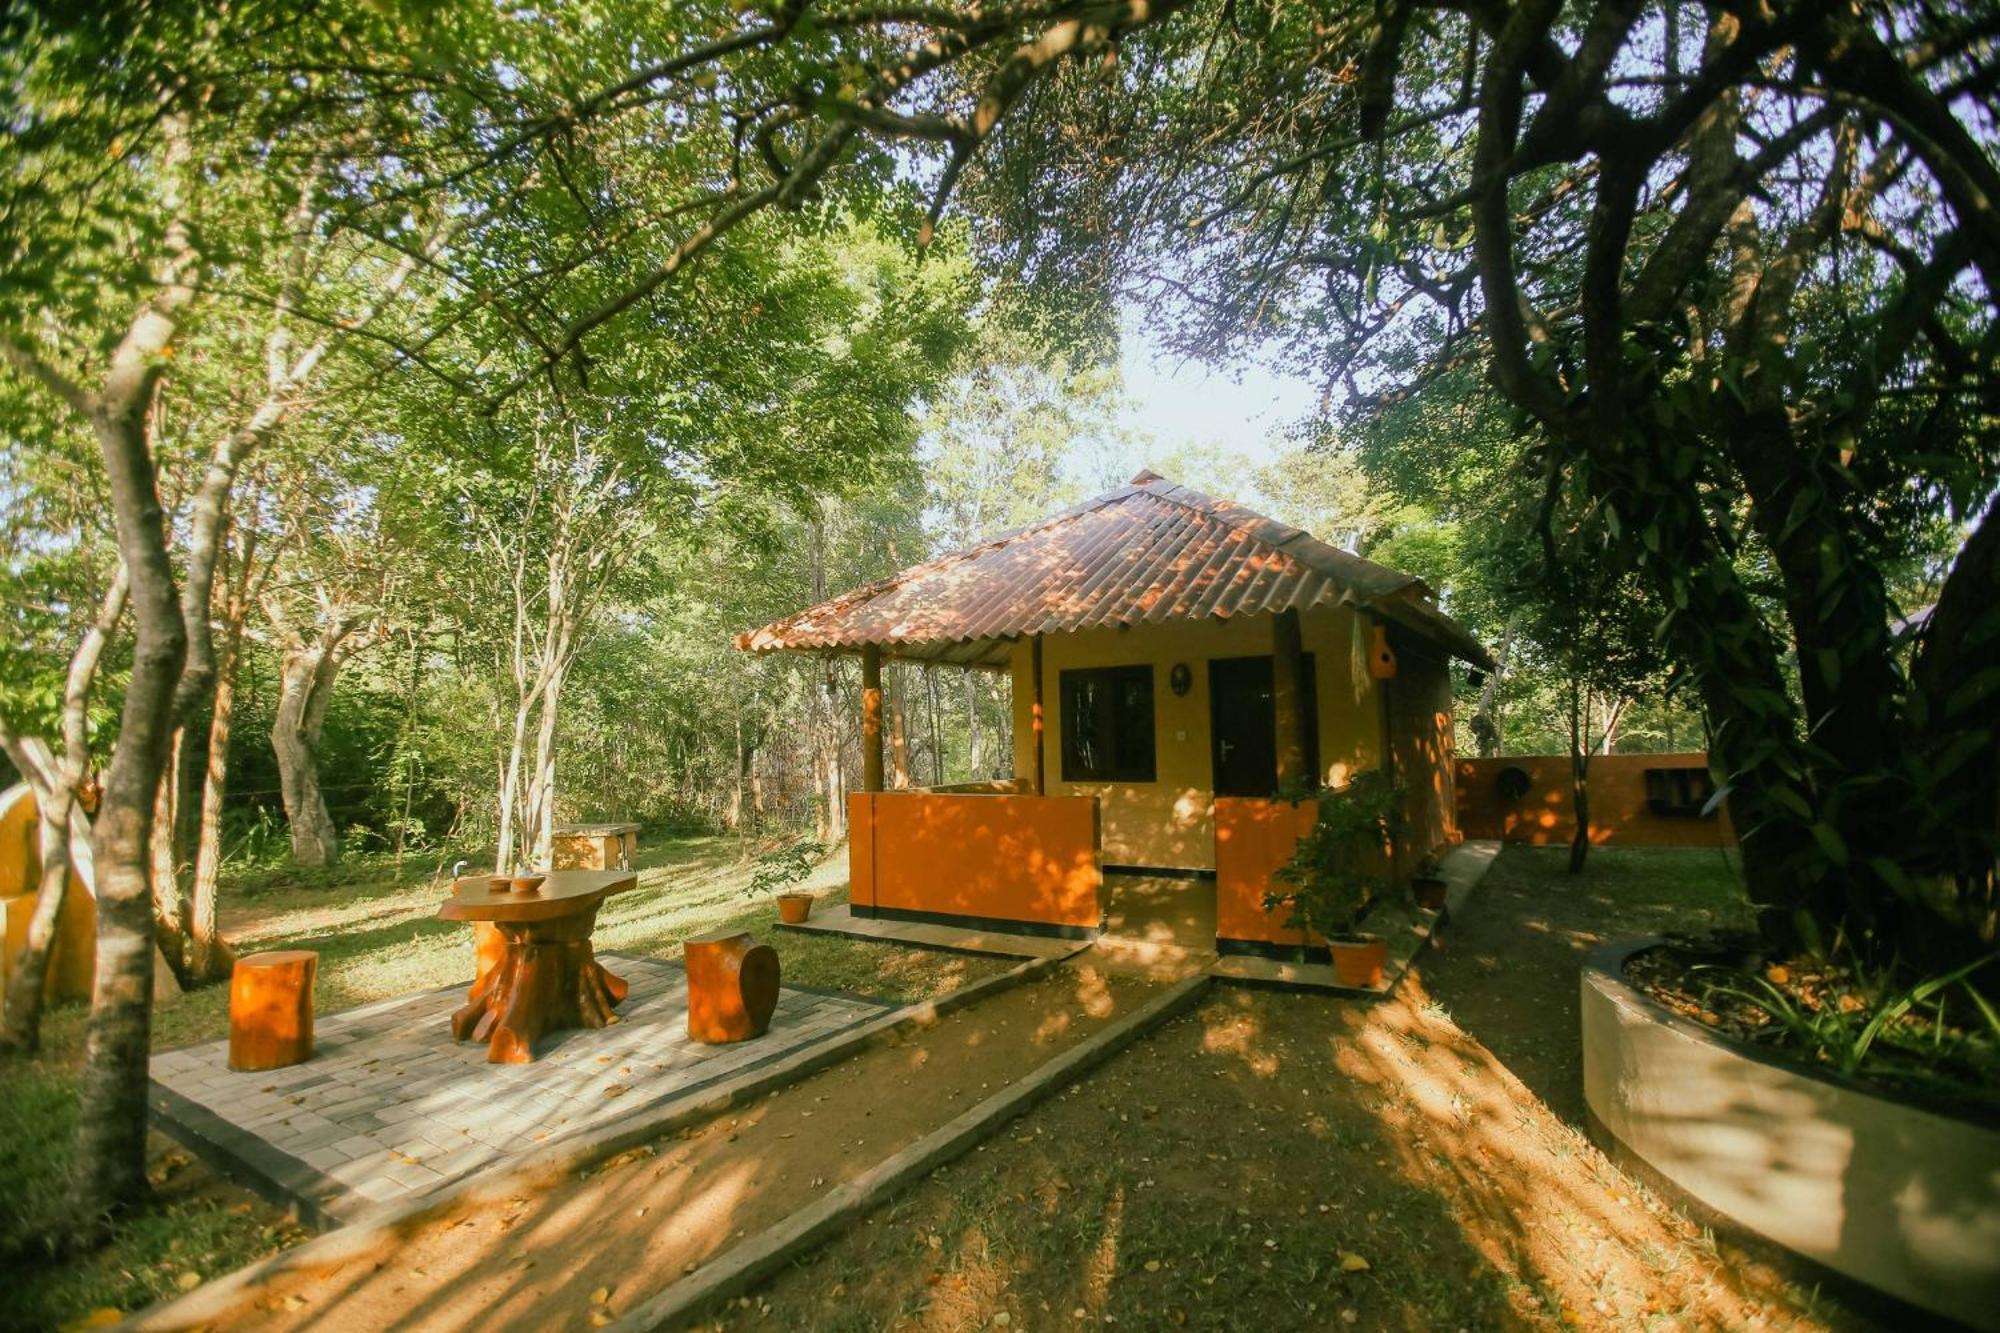 Niyagala Lodge Sigiriya Dış mekan fotoğraf